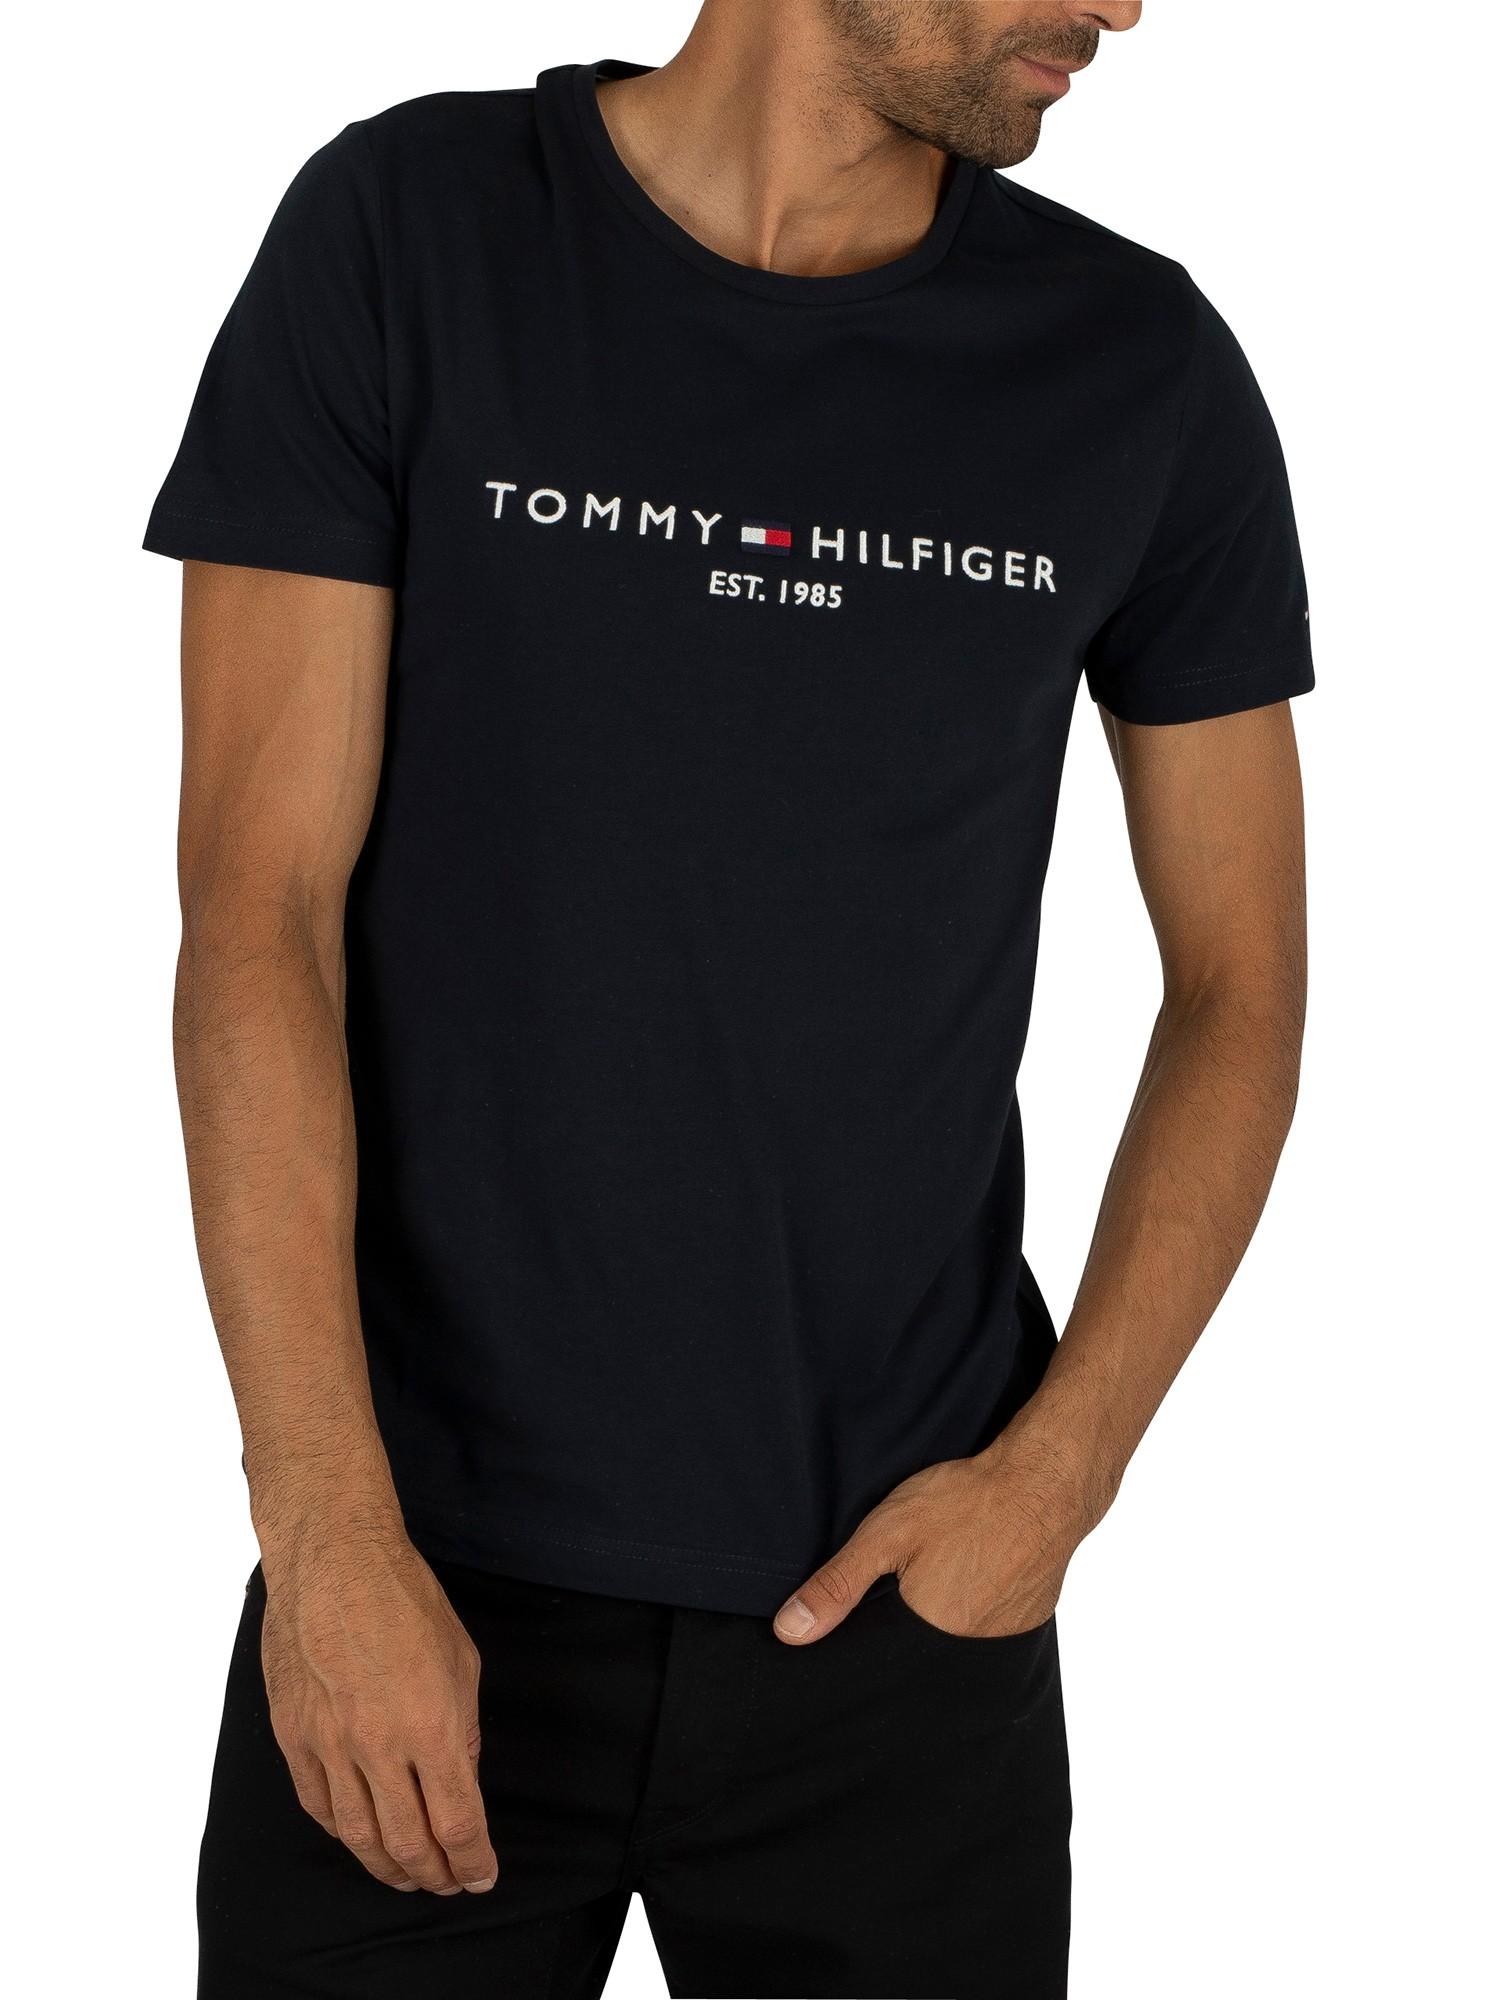 Tommy Hilfiger Logo T-shirt in Black for Men - Lyst